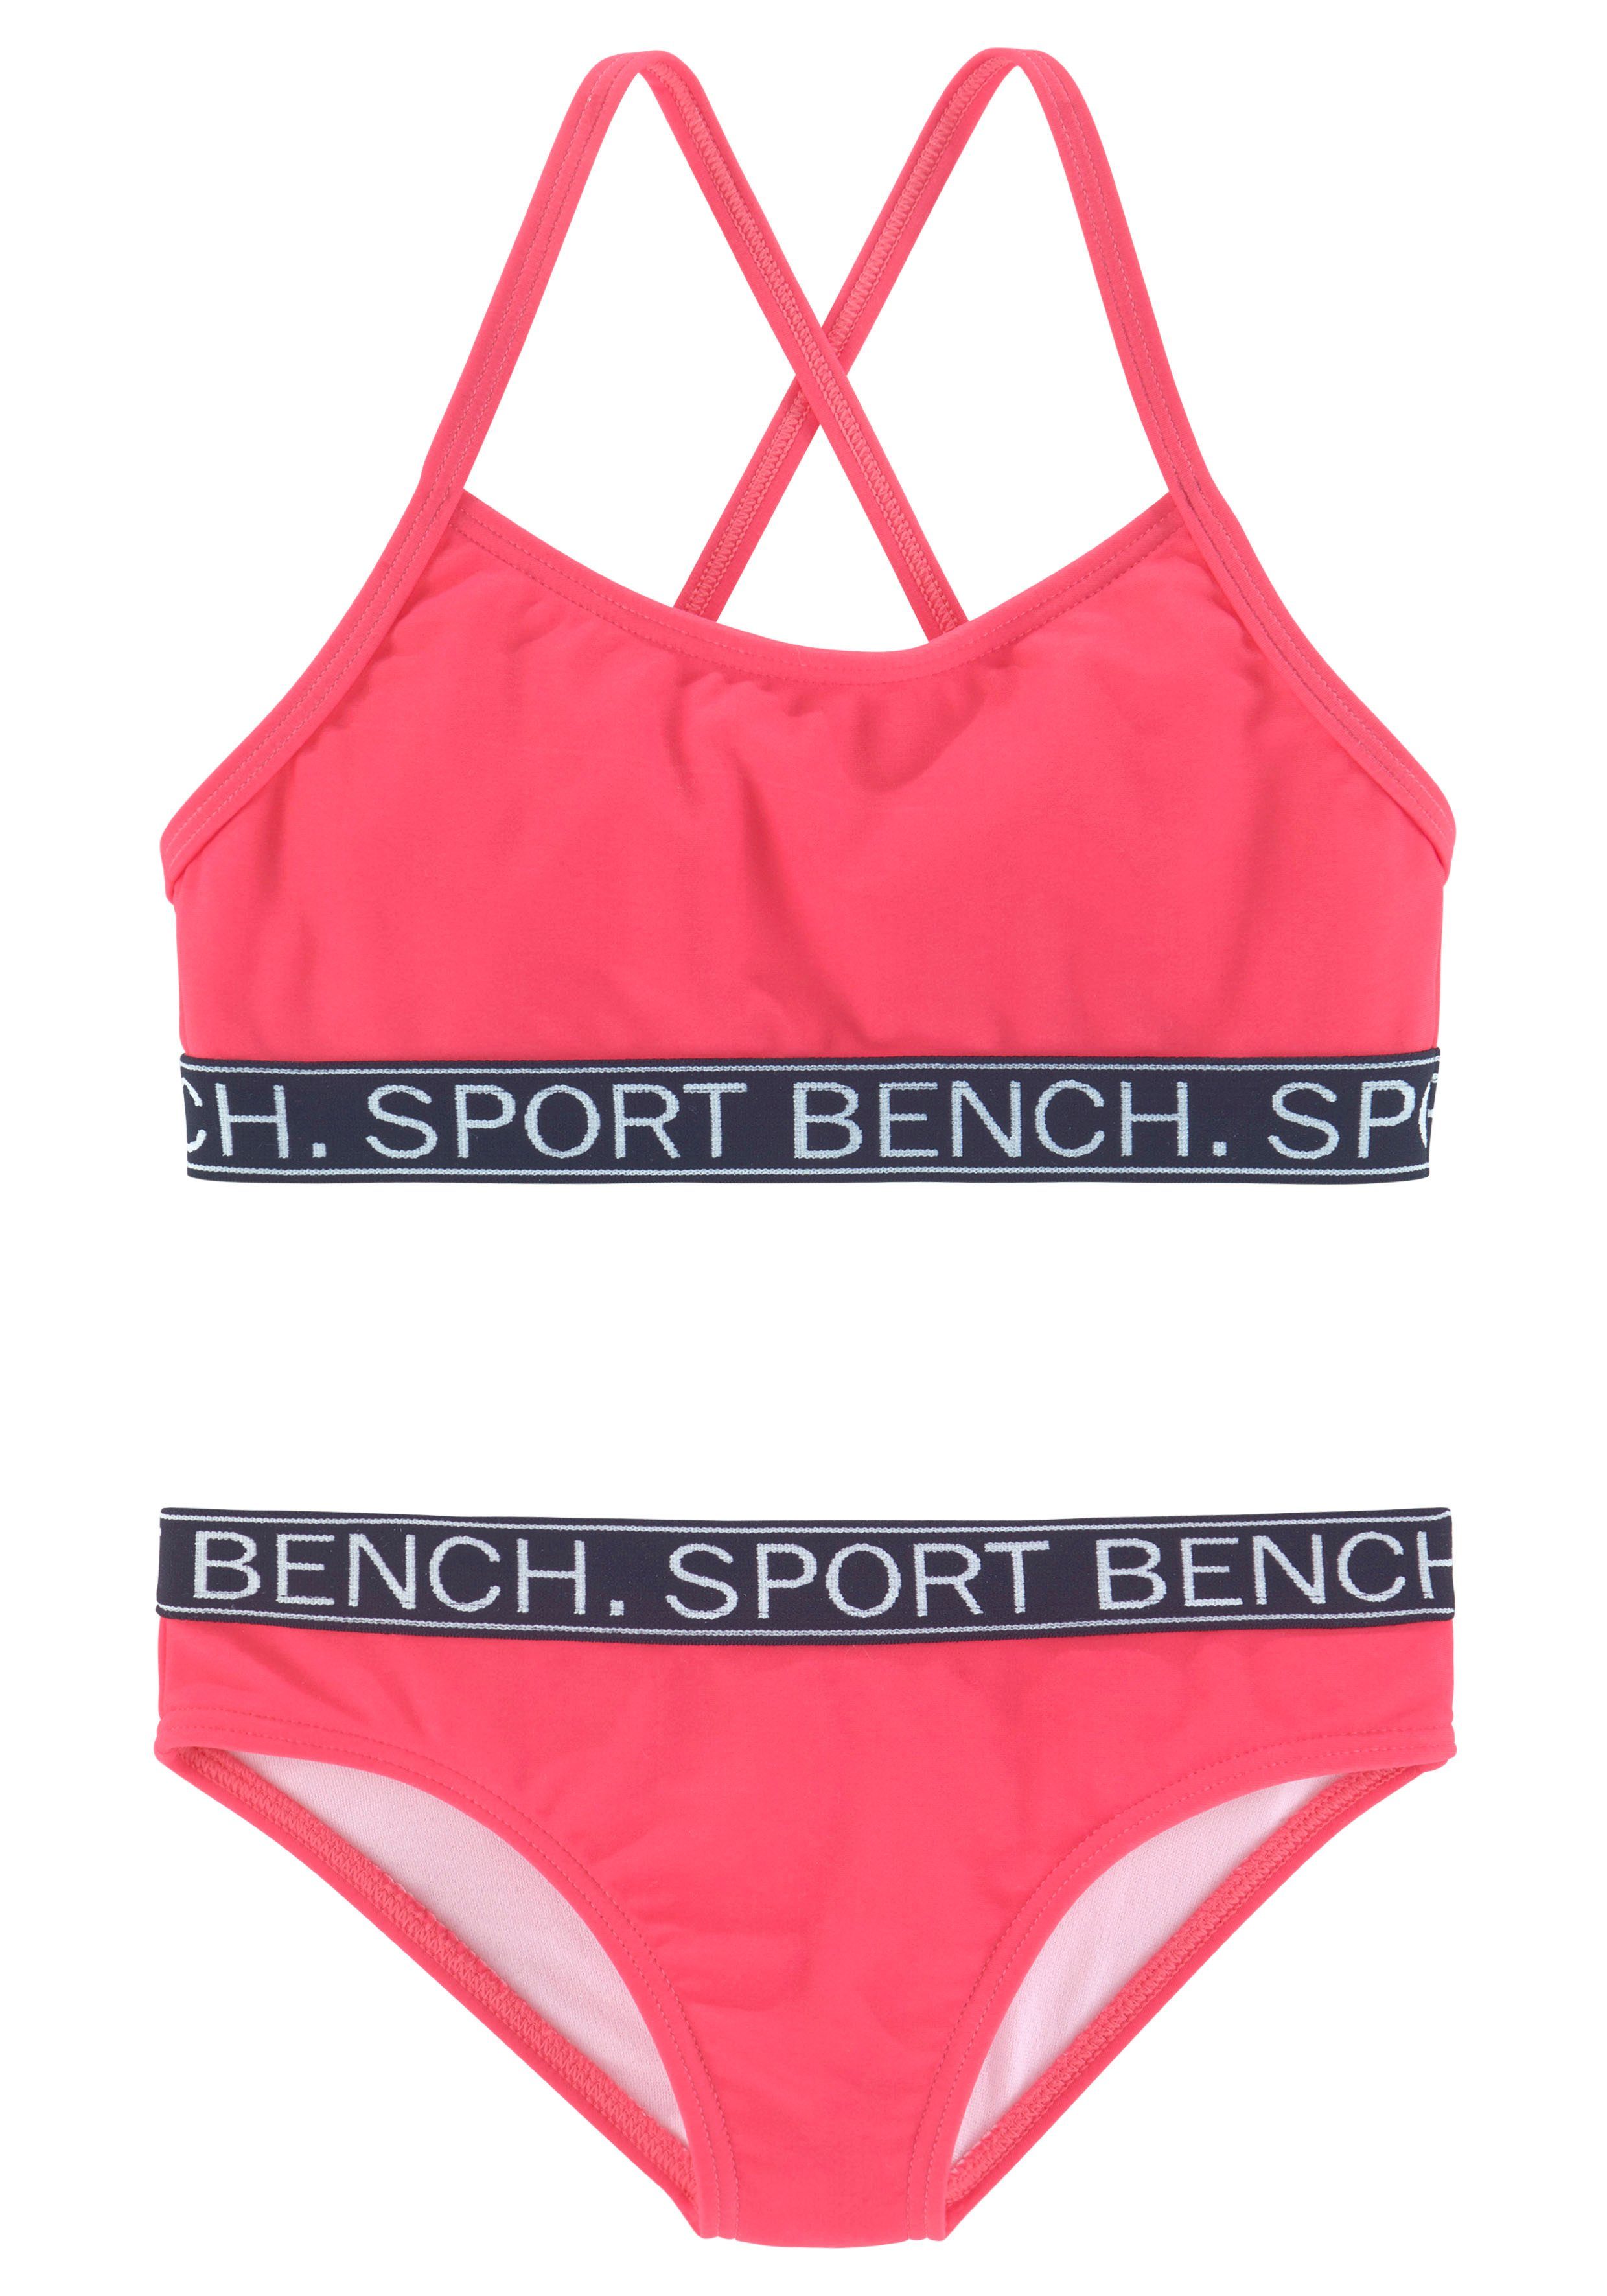 in Farben Bustier-Bikini und pink Yva Kids sportlichem Bench. Design